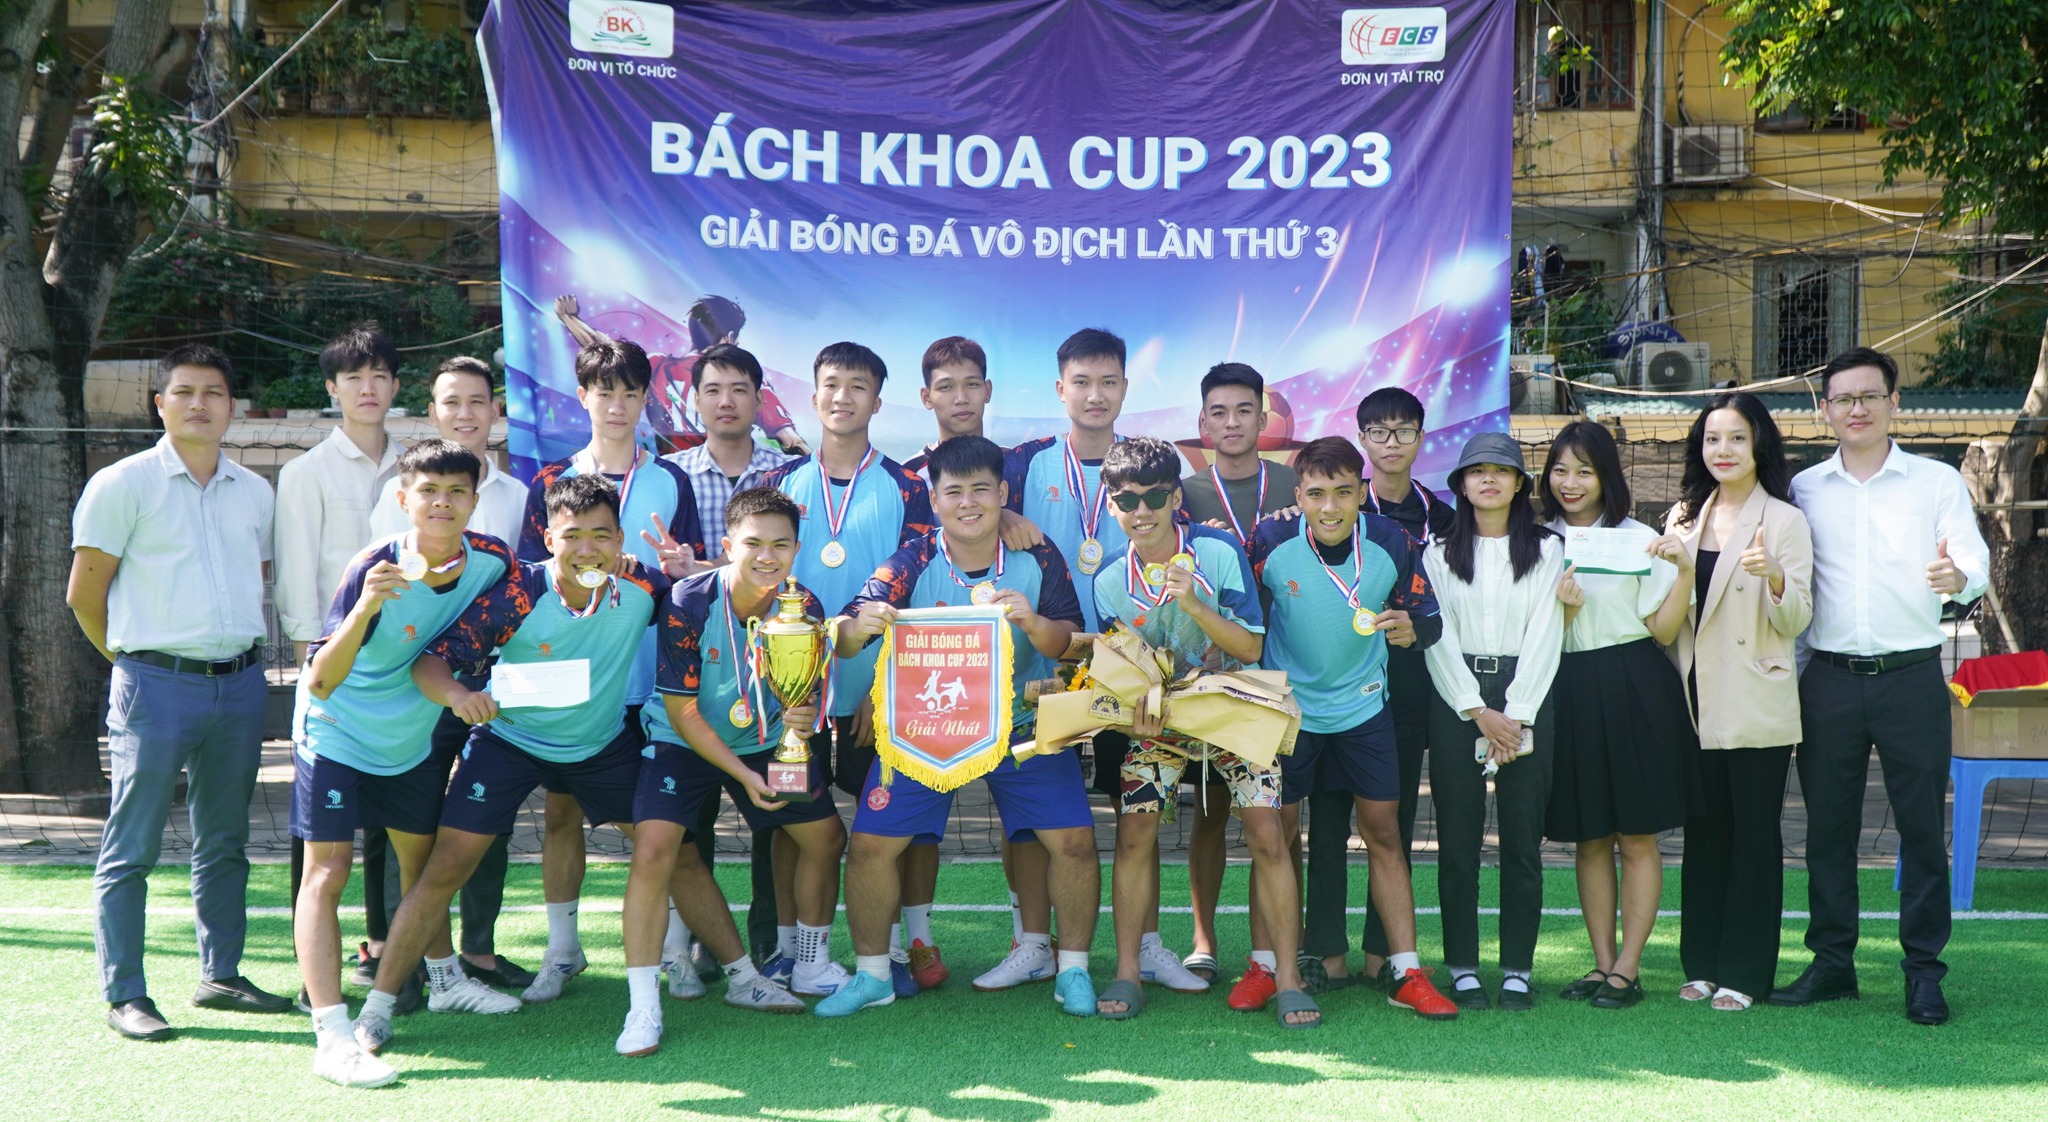 Sinh viên Công nghệ Ô tô khóa 15 giành cup vô địch trong giải bóng đá BÁCH KHOA CUP 2023